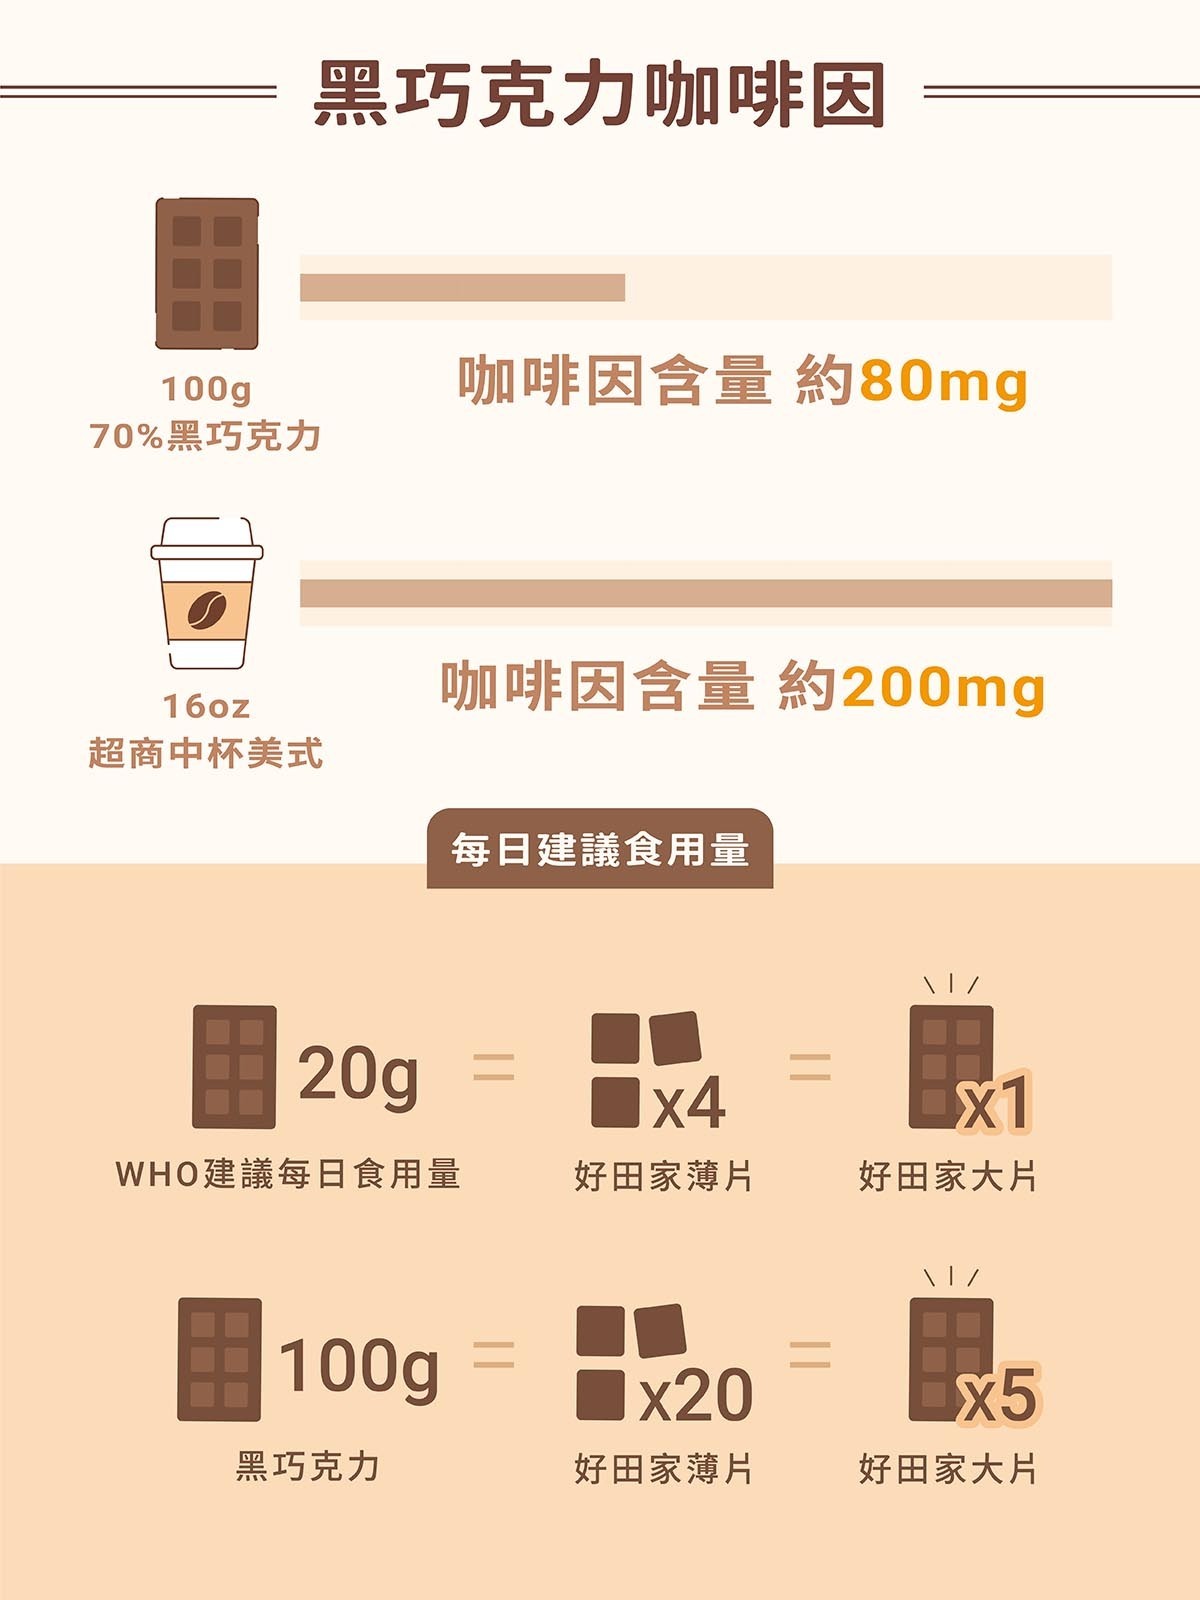 巧克力-咖啡-咖啡因比較